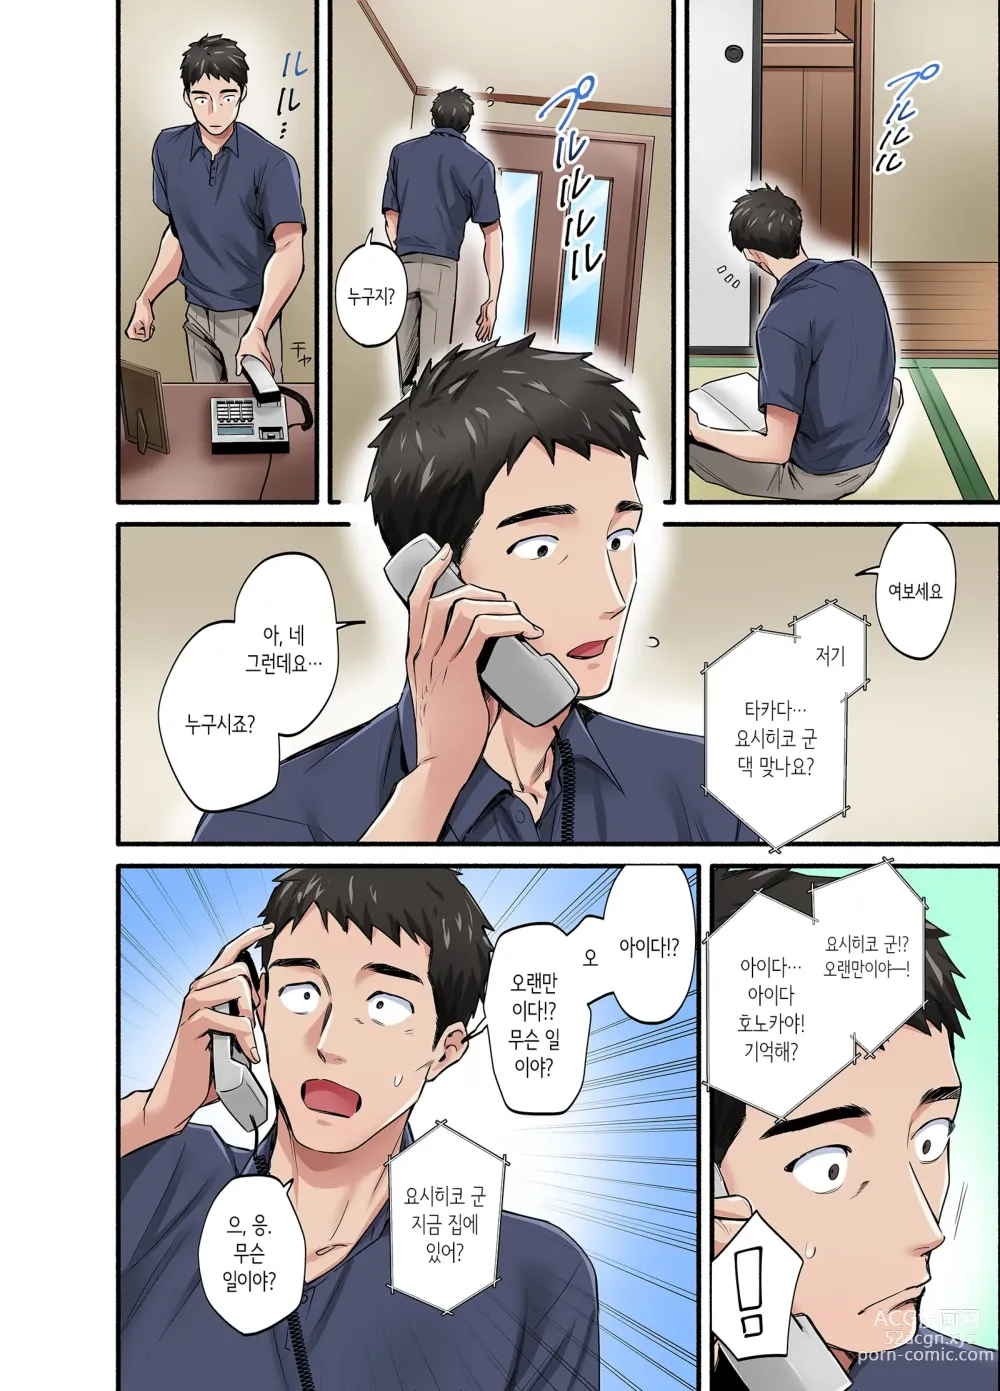 Page 3 of doujinshi 첫사랑의 딸 코믹판 1화